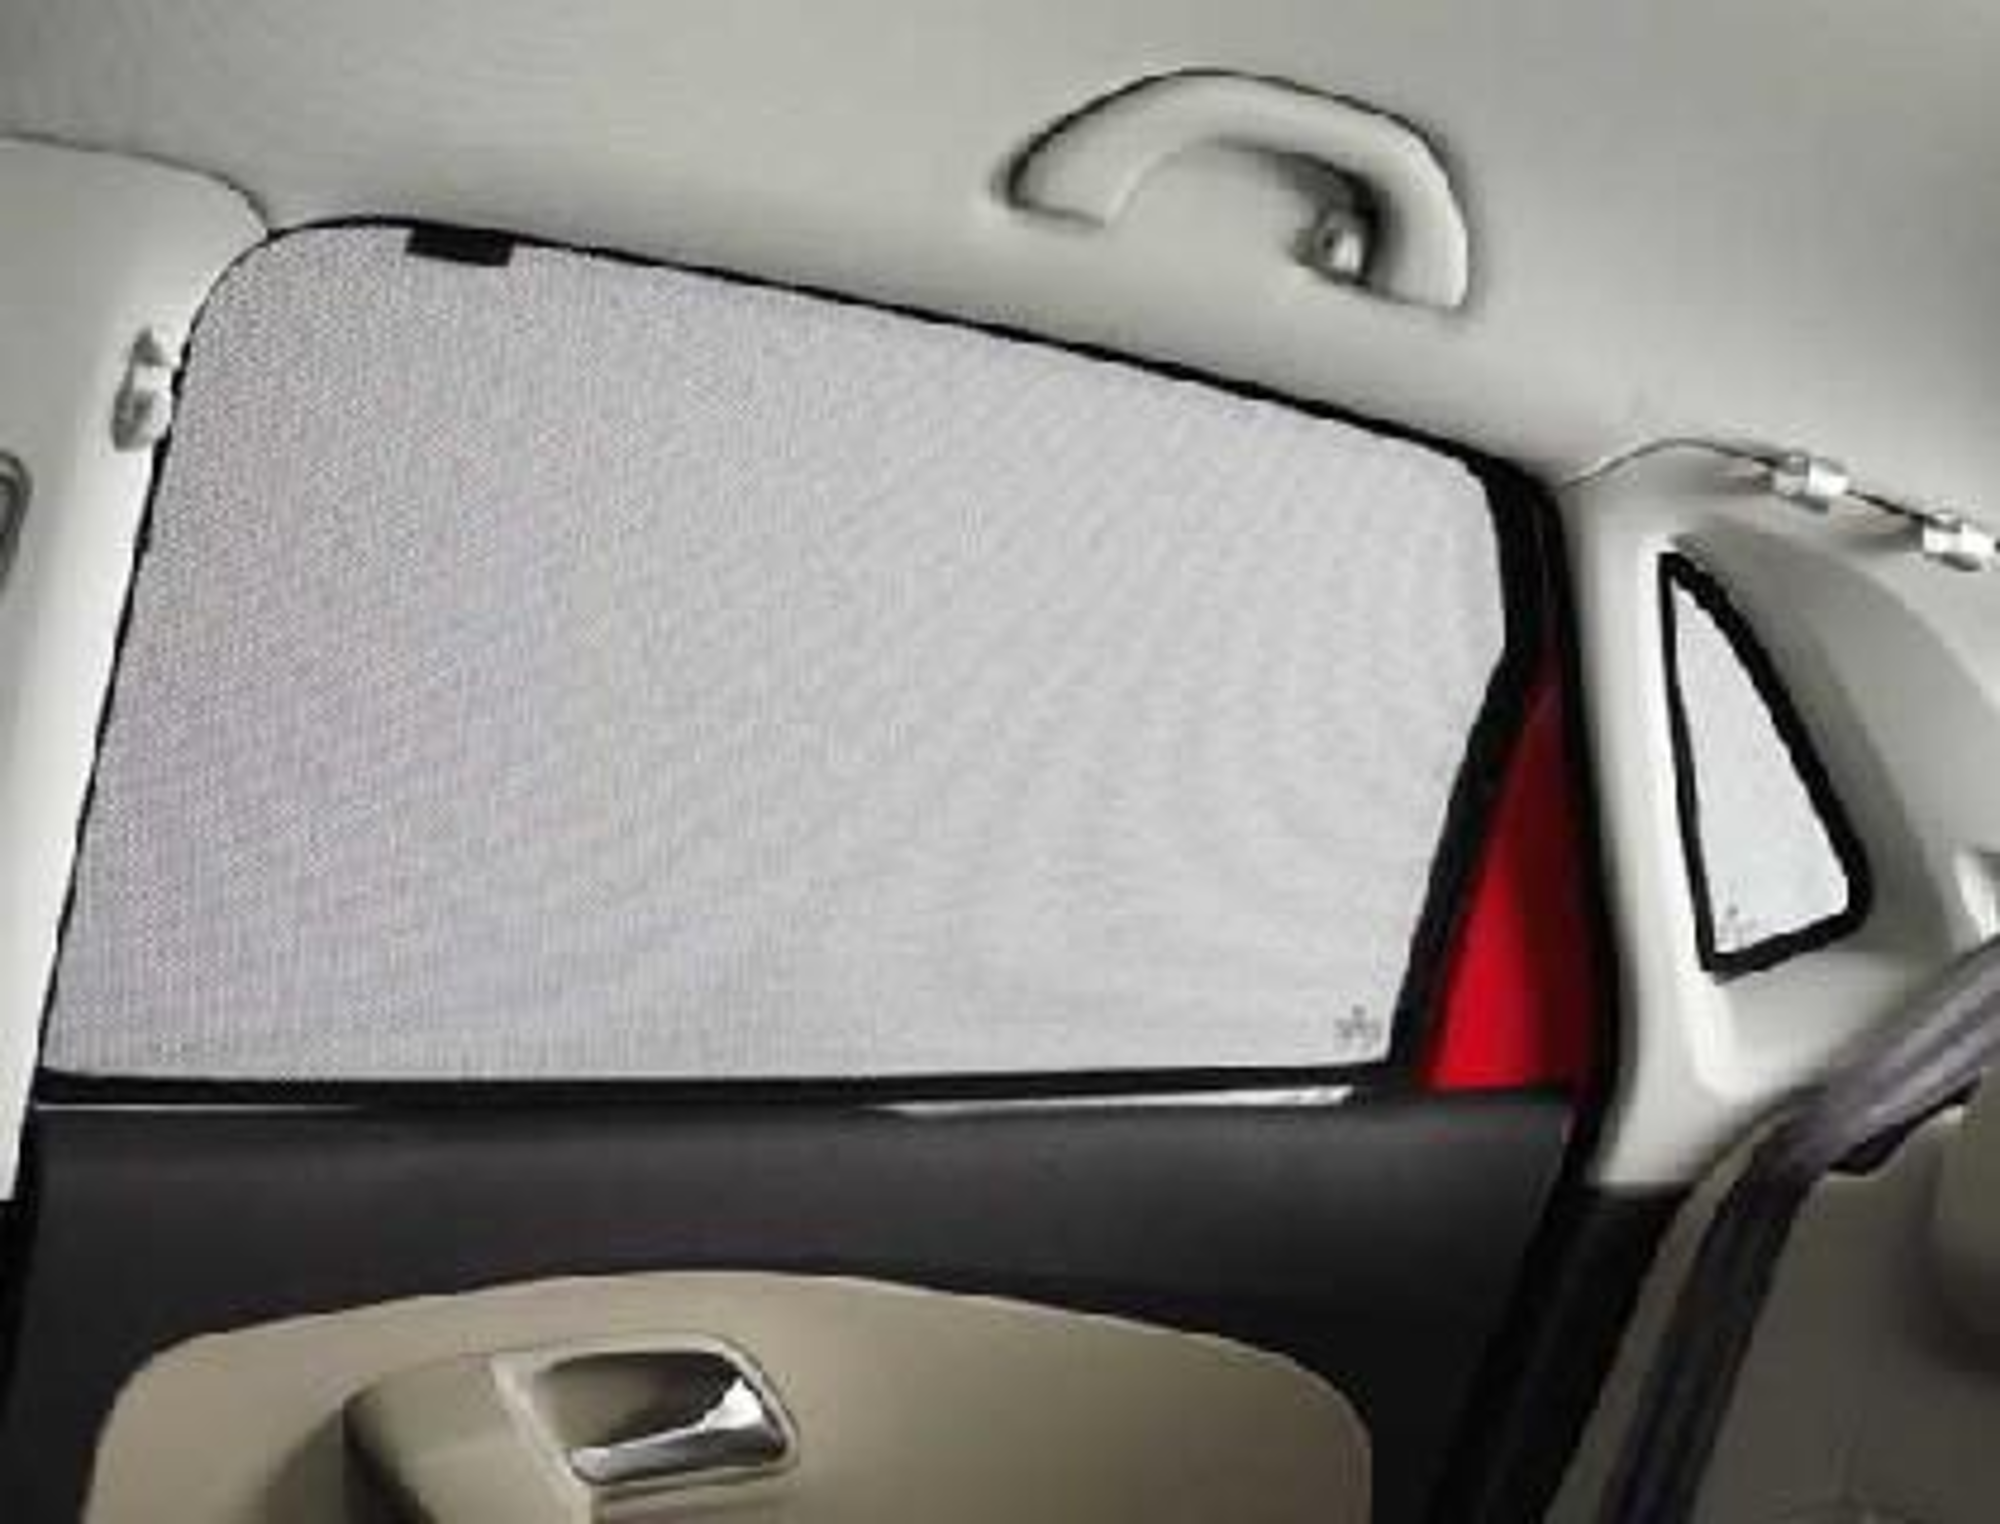  BIXUAN Pare-soleil compatible avec VW Polo MK6 Seat